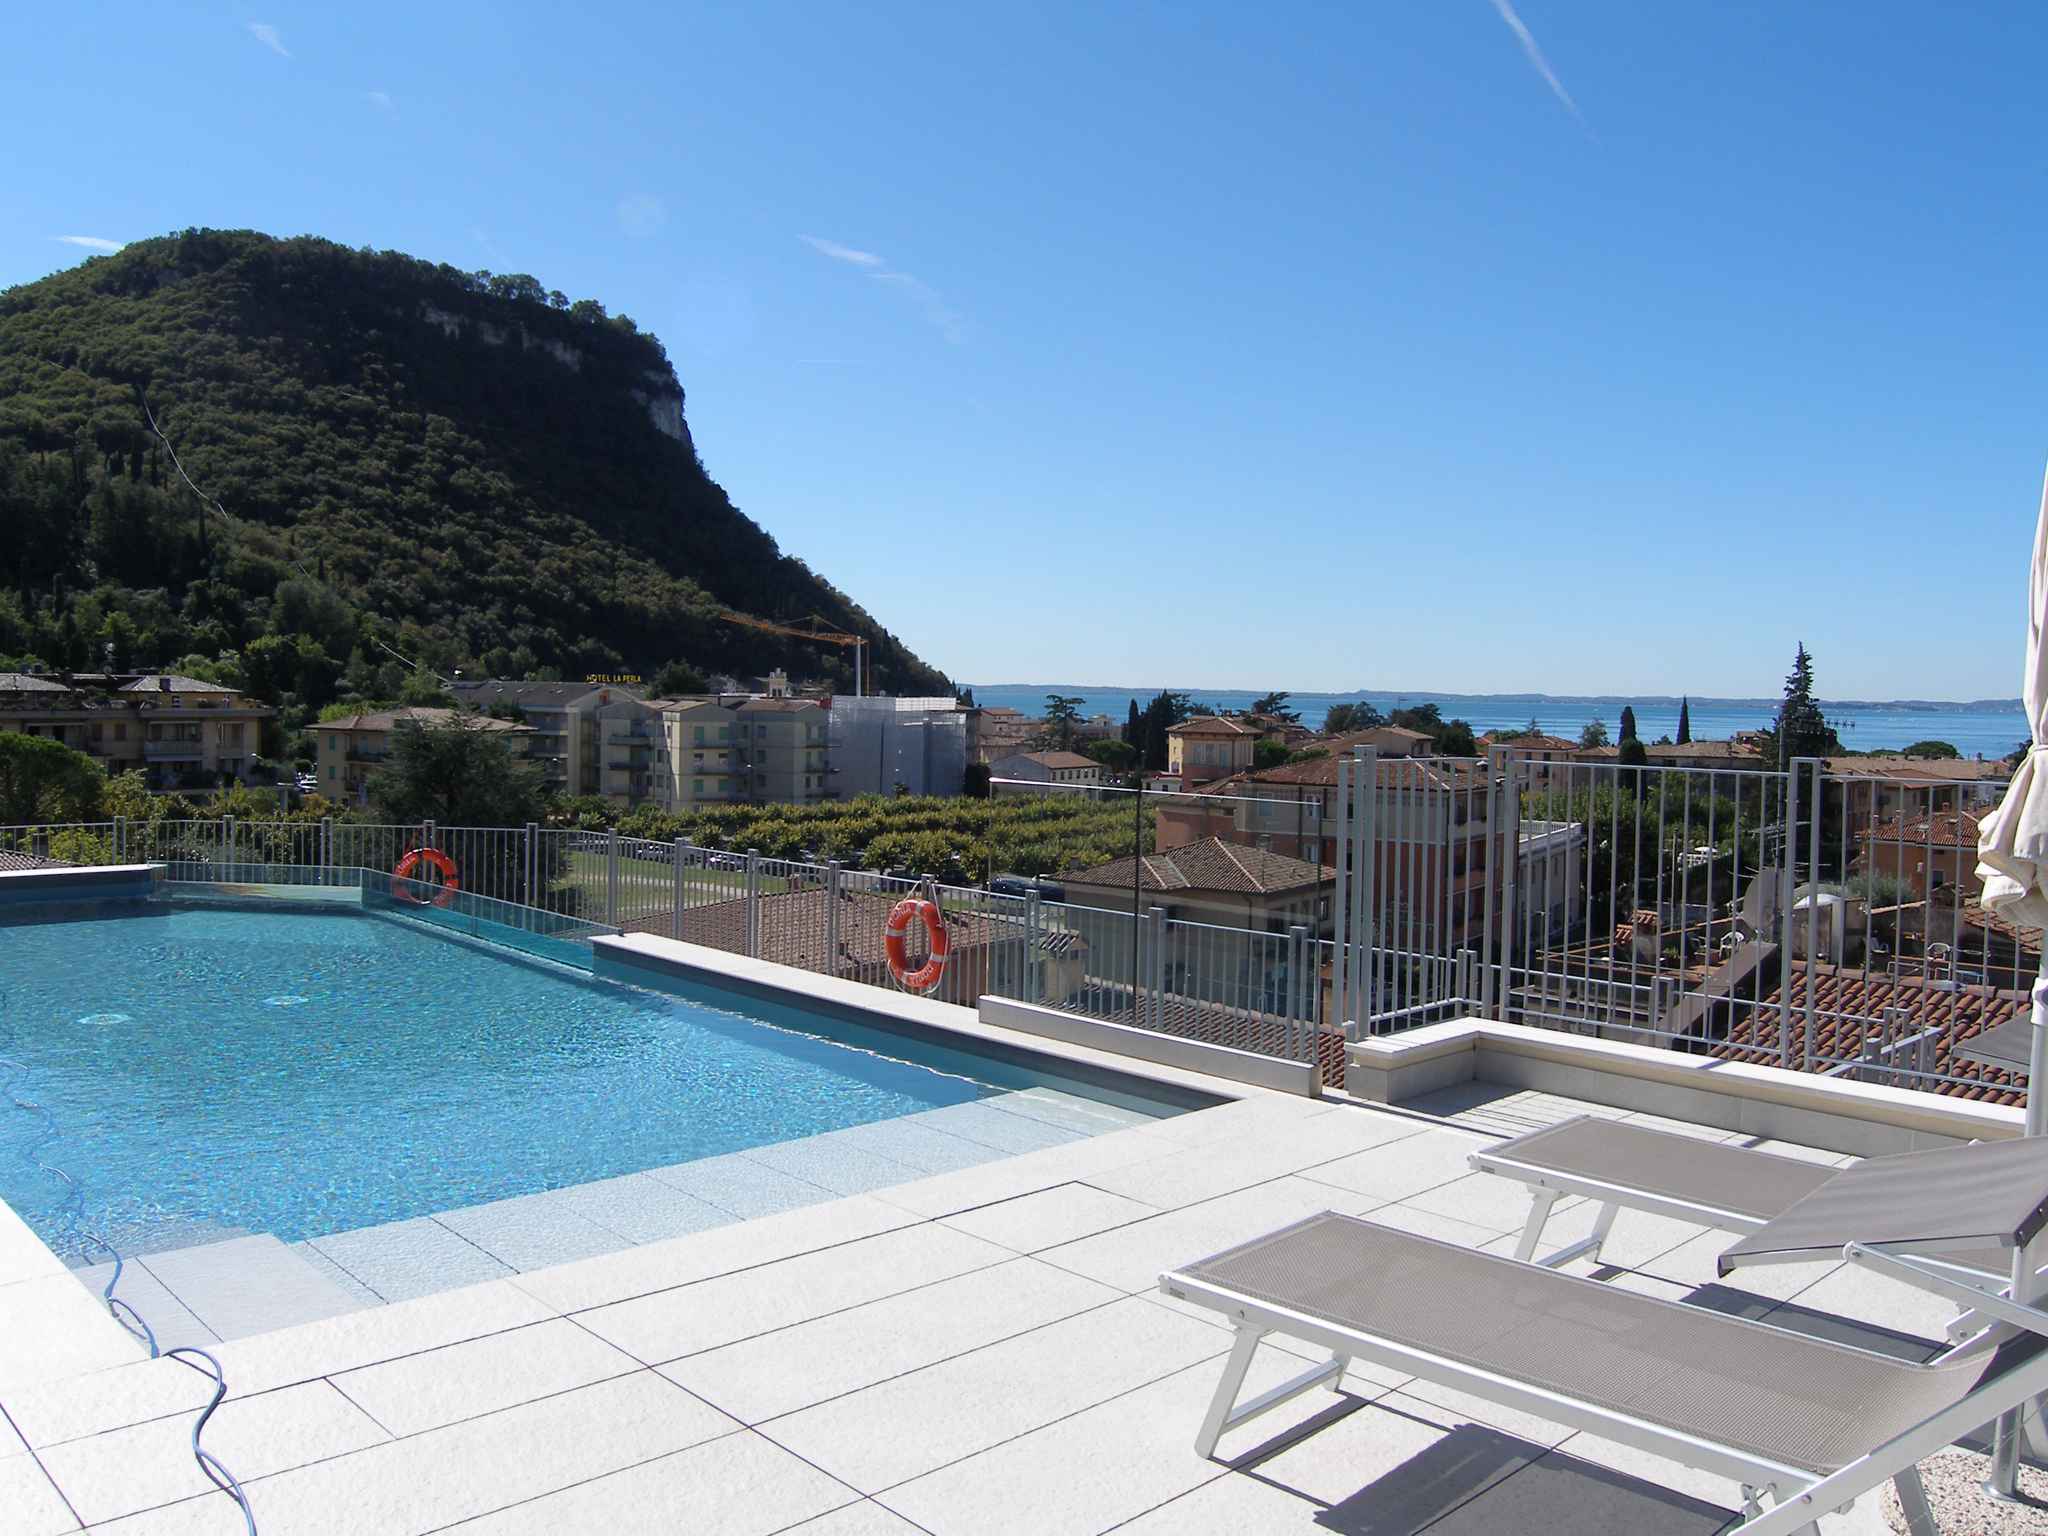 Ferienwohnung mit Pool auf dem Dach   Gardasee - Lago di Garda